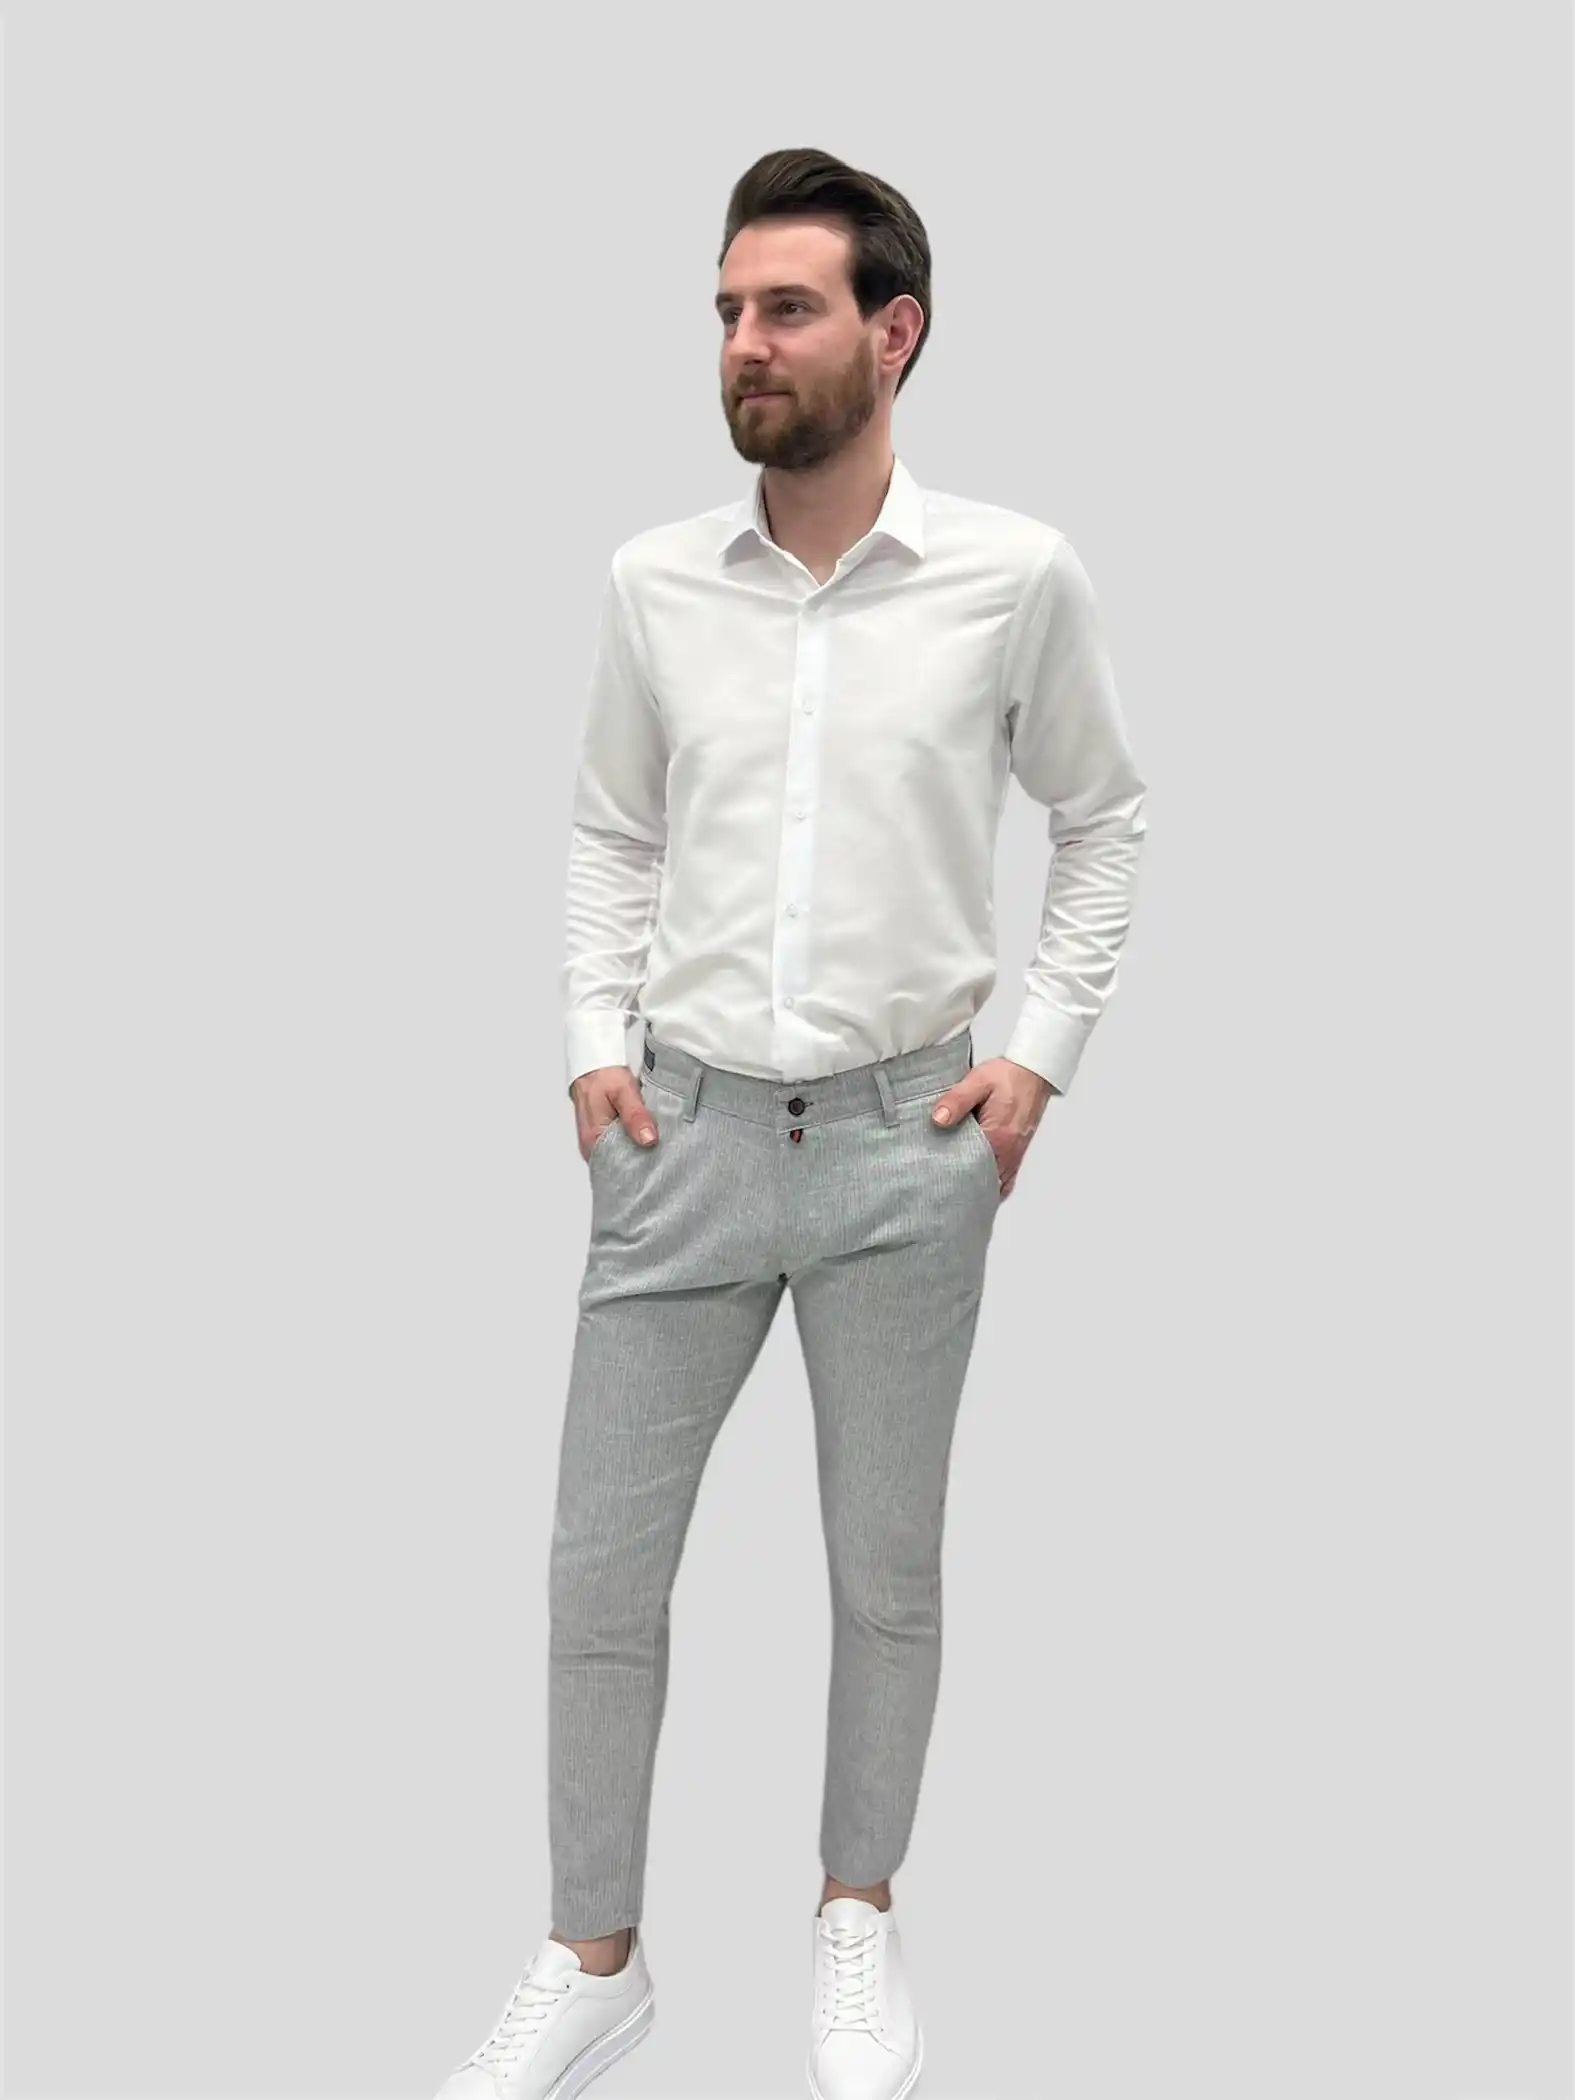 Aντρικό υφασμάτινο παντελόνι γκρι με άσπρη ρίγα